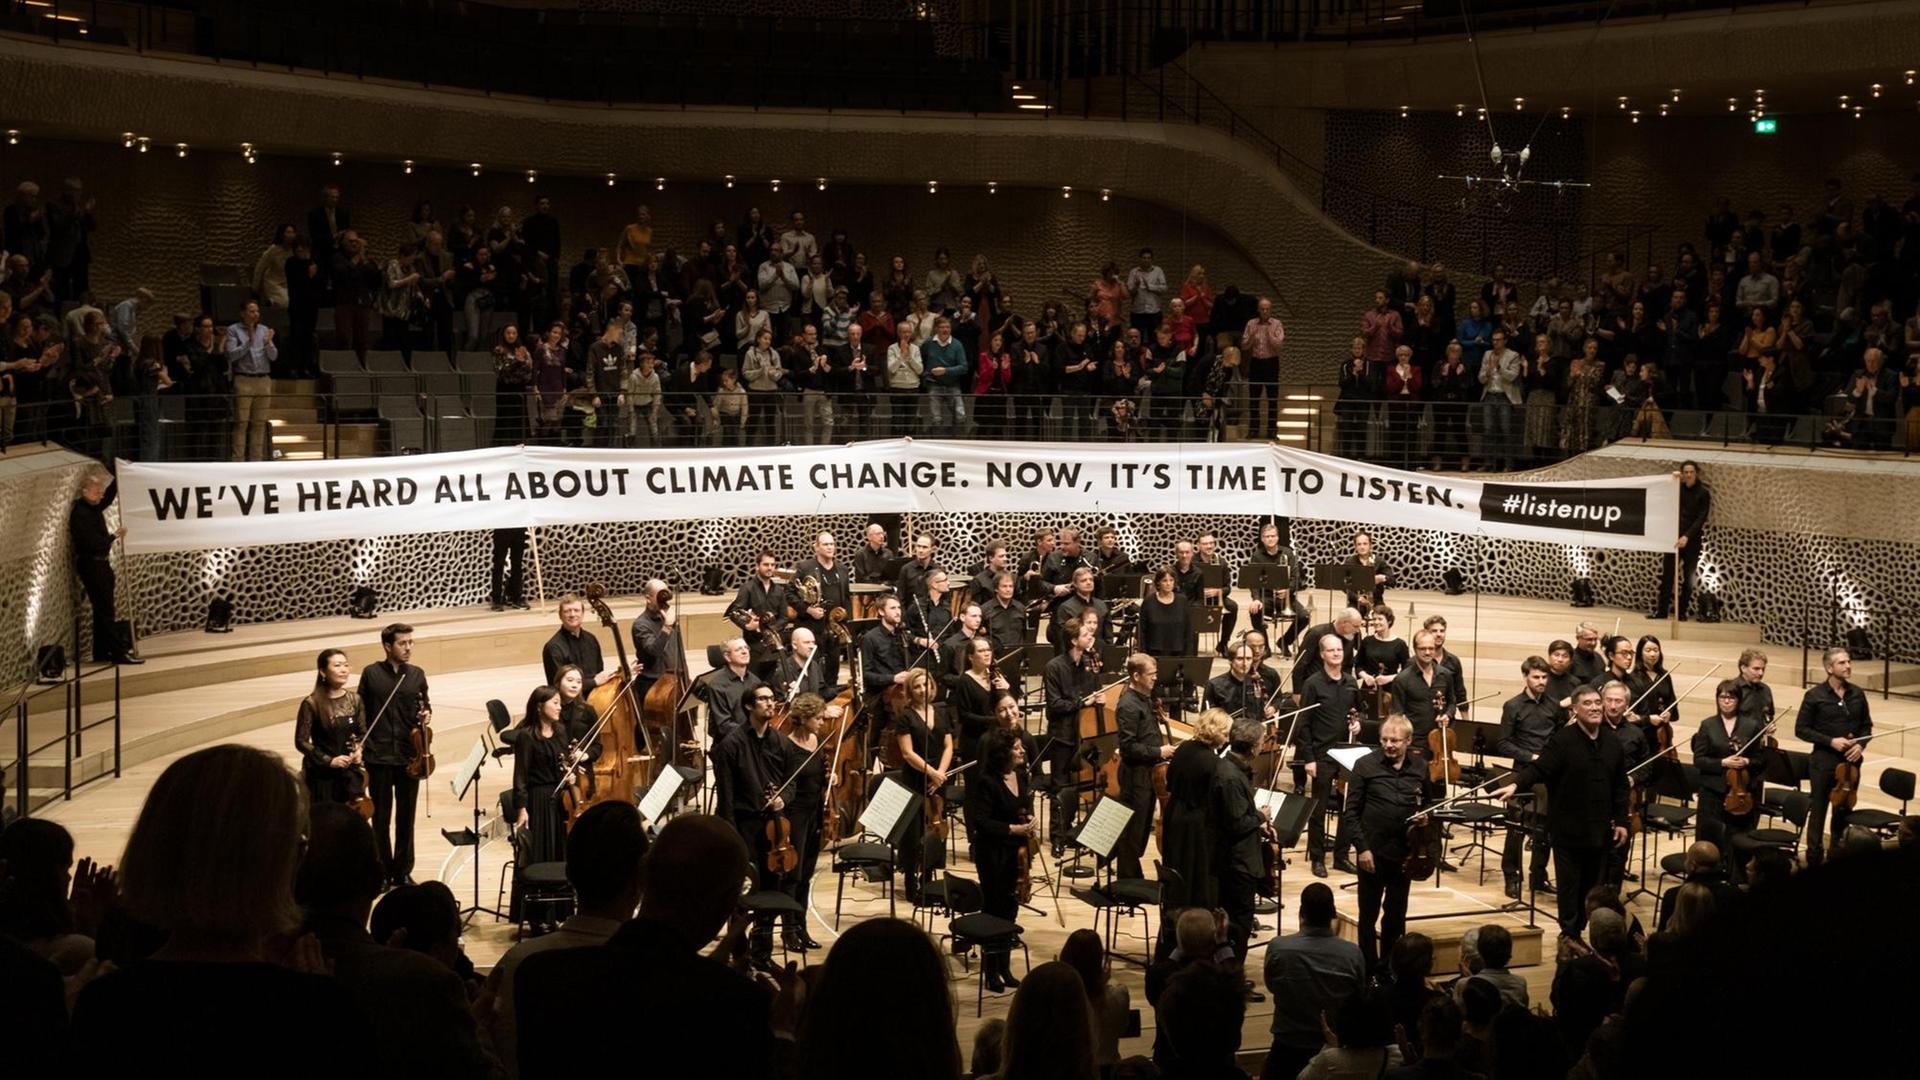 Ein Orchester steht vor einem Transparent, auf dem zu lesen ist "We've heard all about climate change, now it's time to listen"